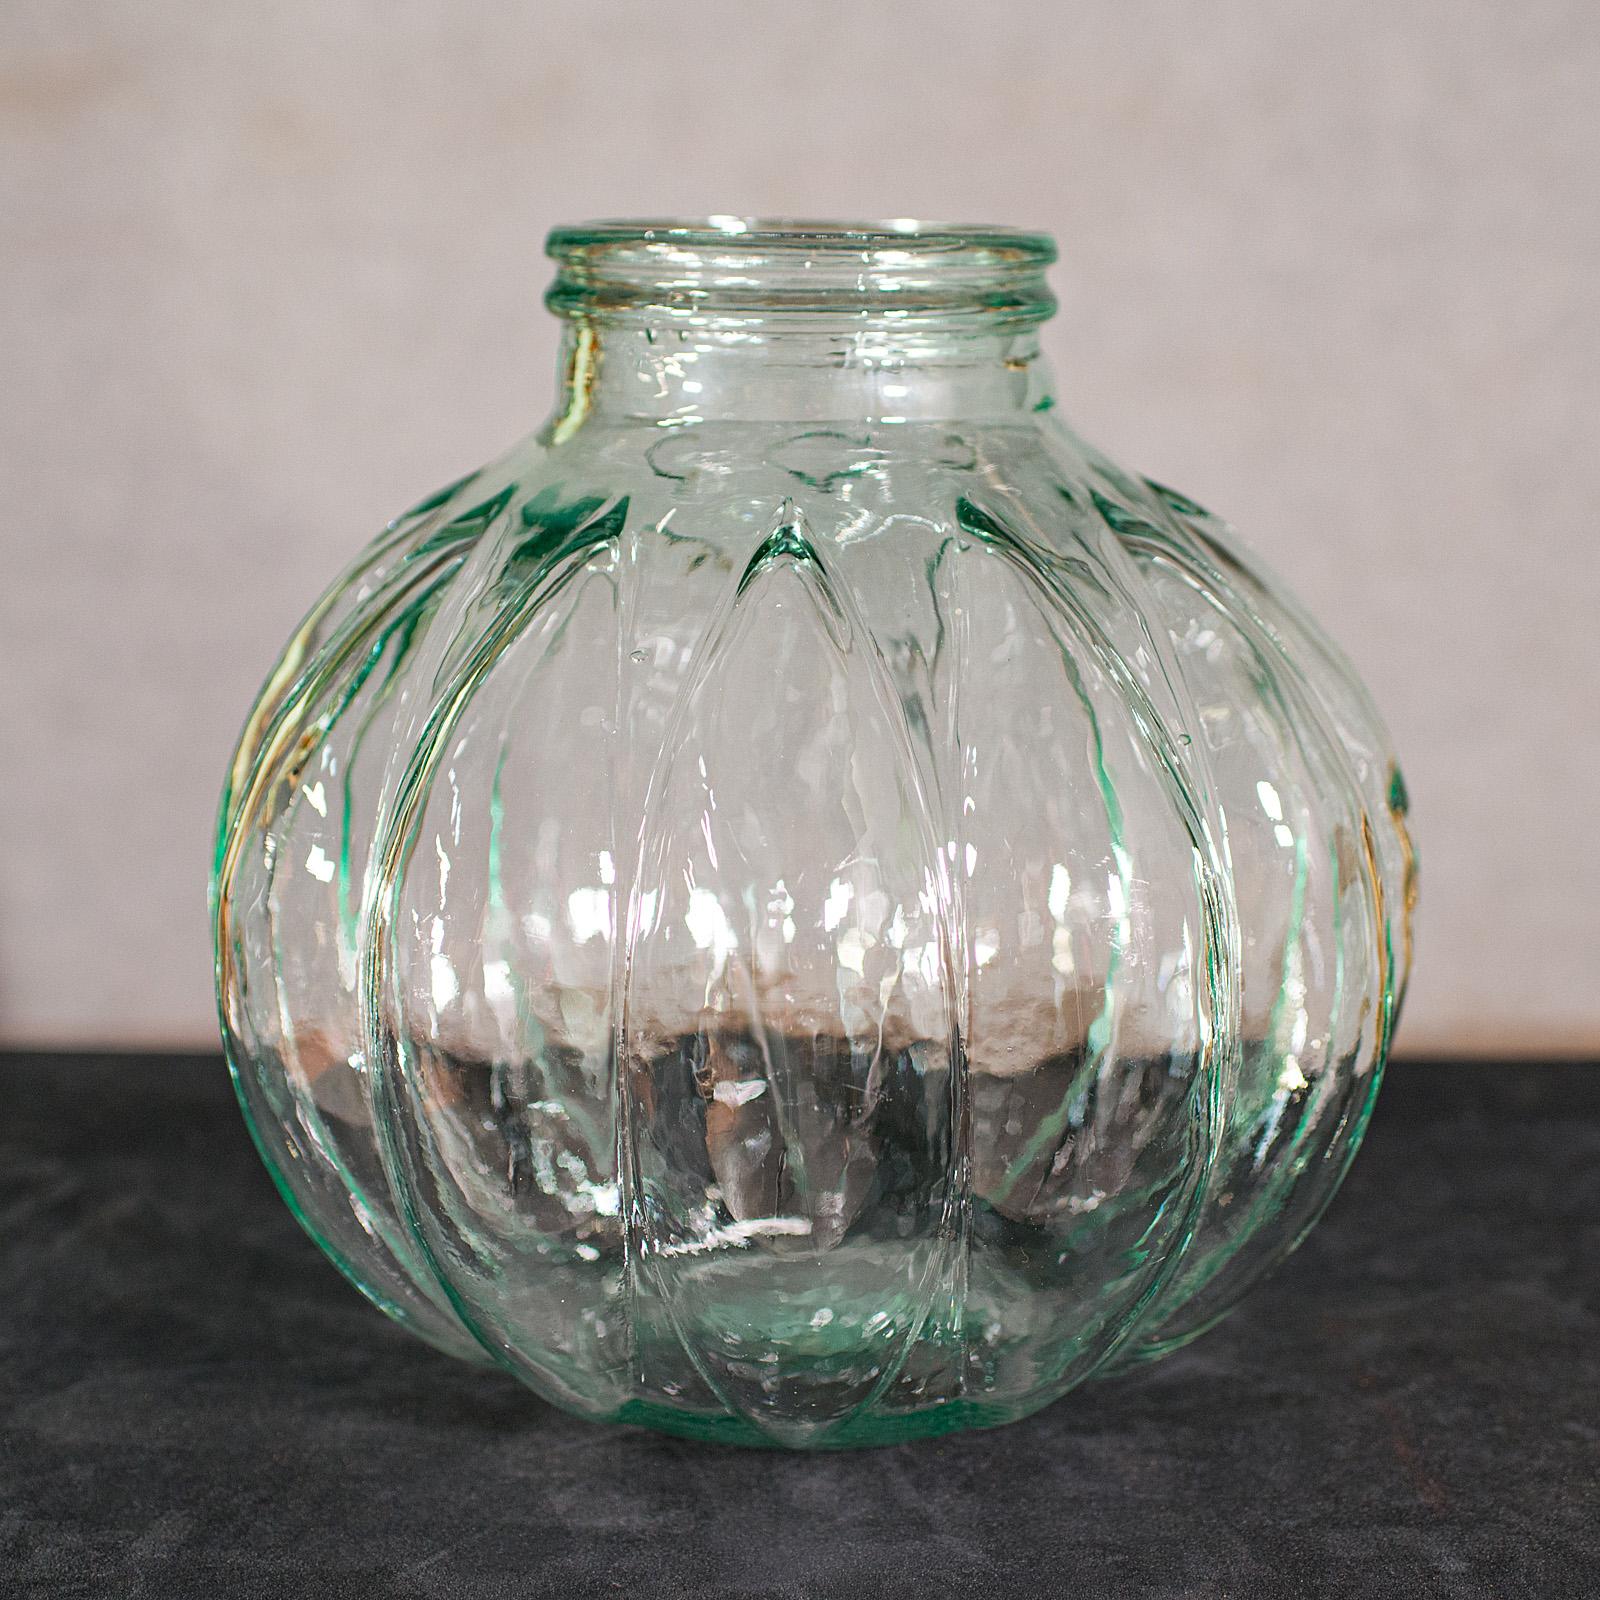 Dies ist ein großer Vintage-Karaffe. Ein englisches, dekoratives Vorratsglas aus dem späten 20. Jahrhundert, ca. 1970.

Großzügig dimensioniert, mit ausgeprägter 